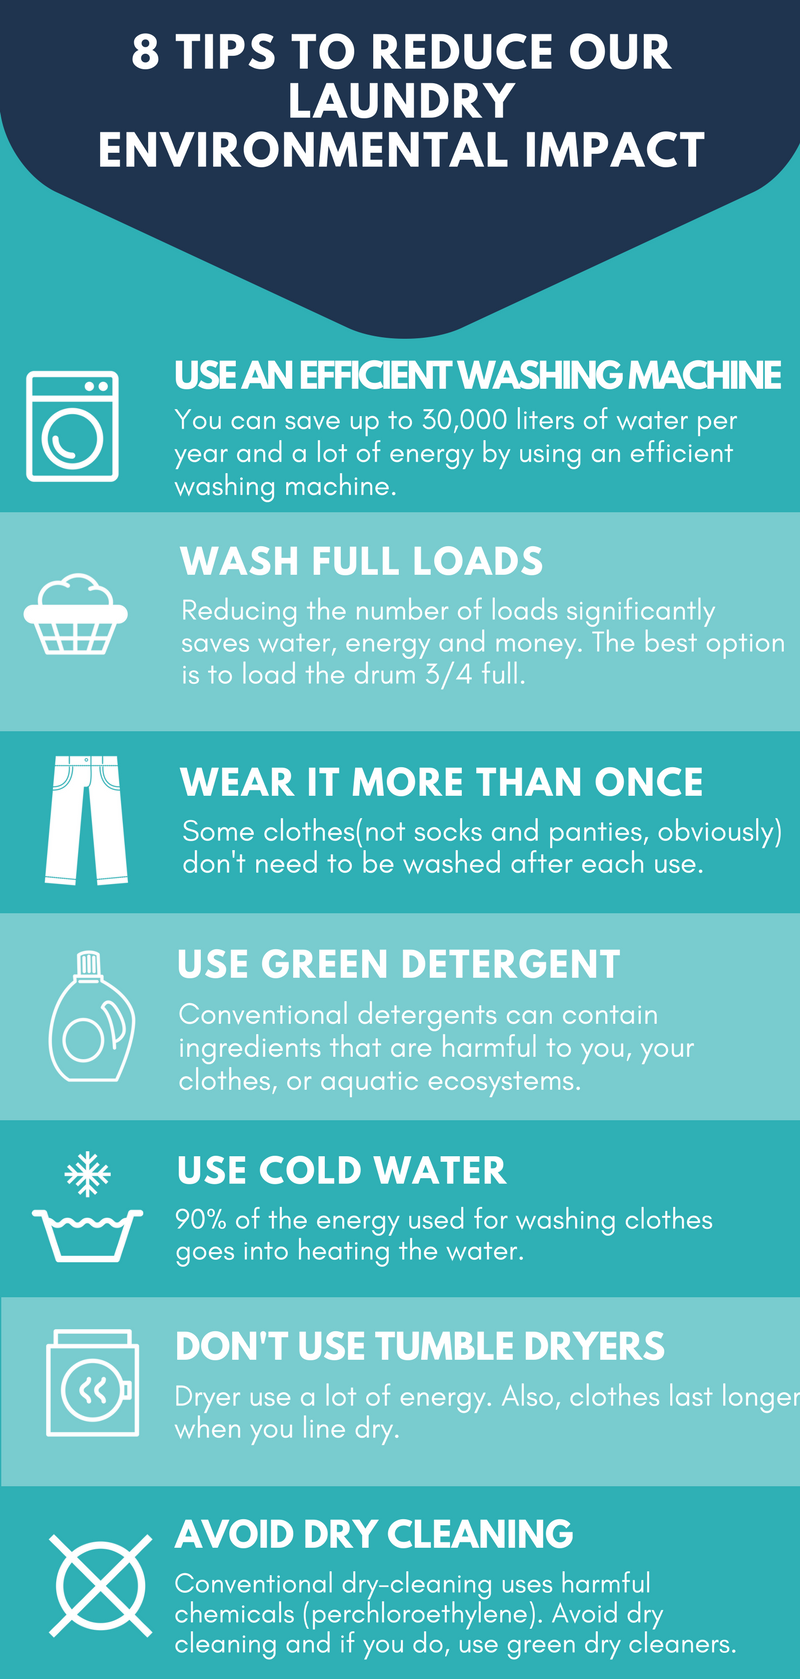 7 Tipps zur Verringerung der Auswirkungen unserer Wäsche